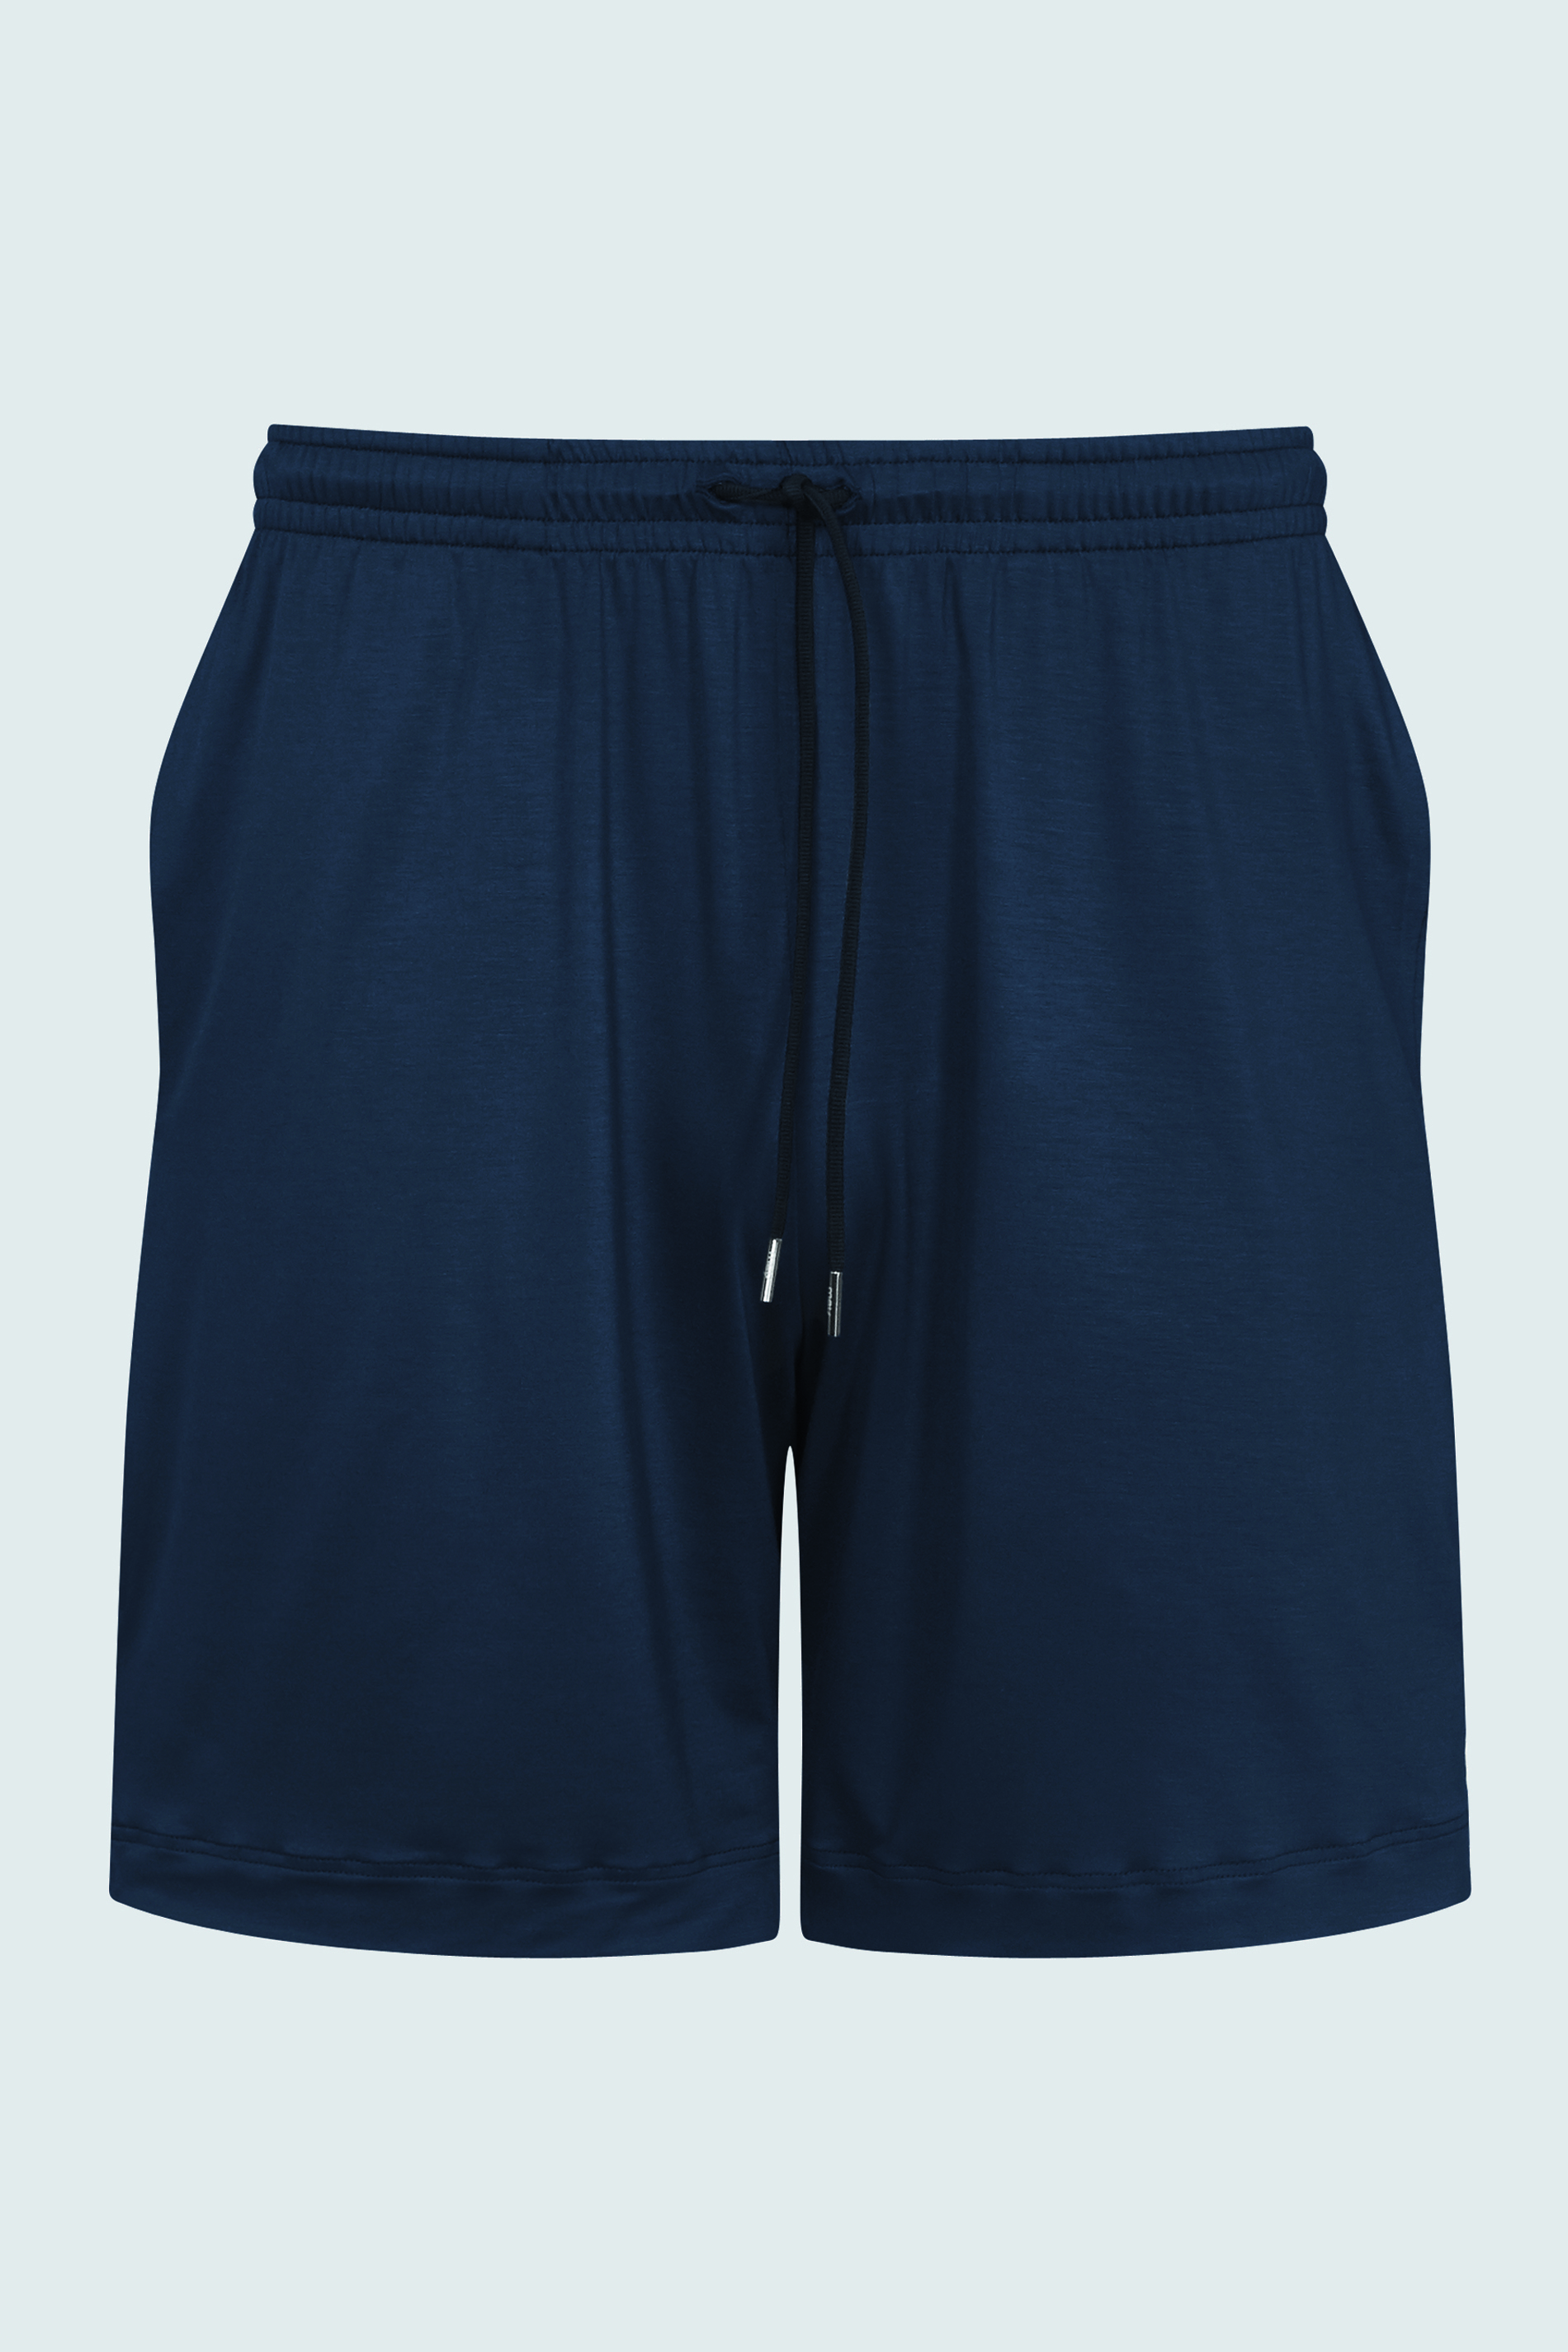 Short pants Yacht Blue Serie Jefferson Modal Cut Out | mey®